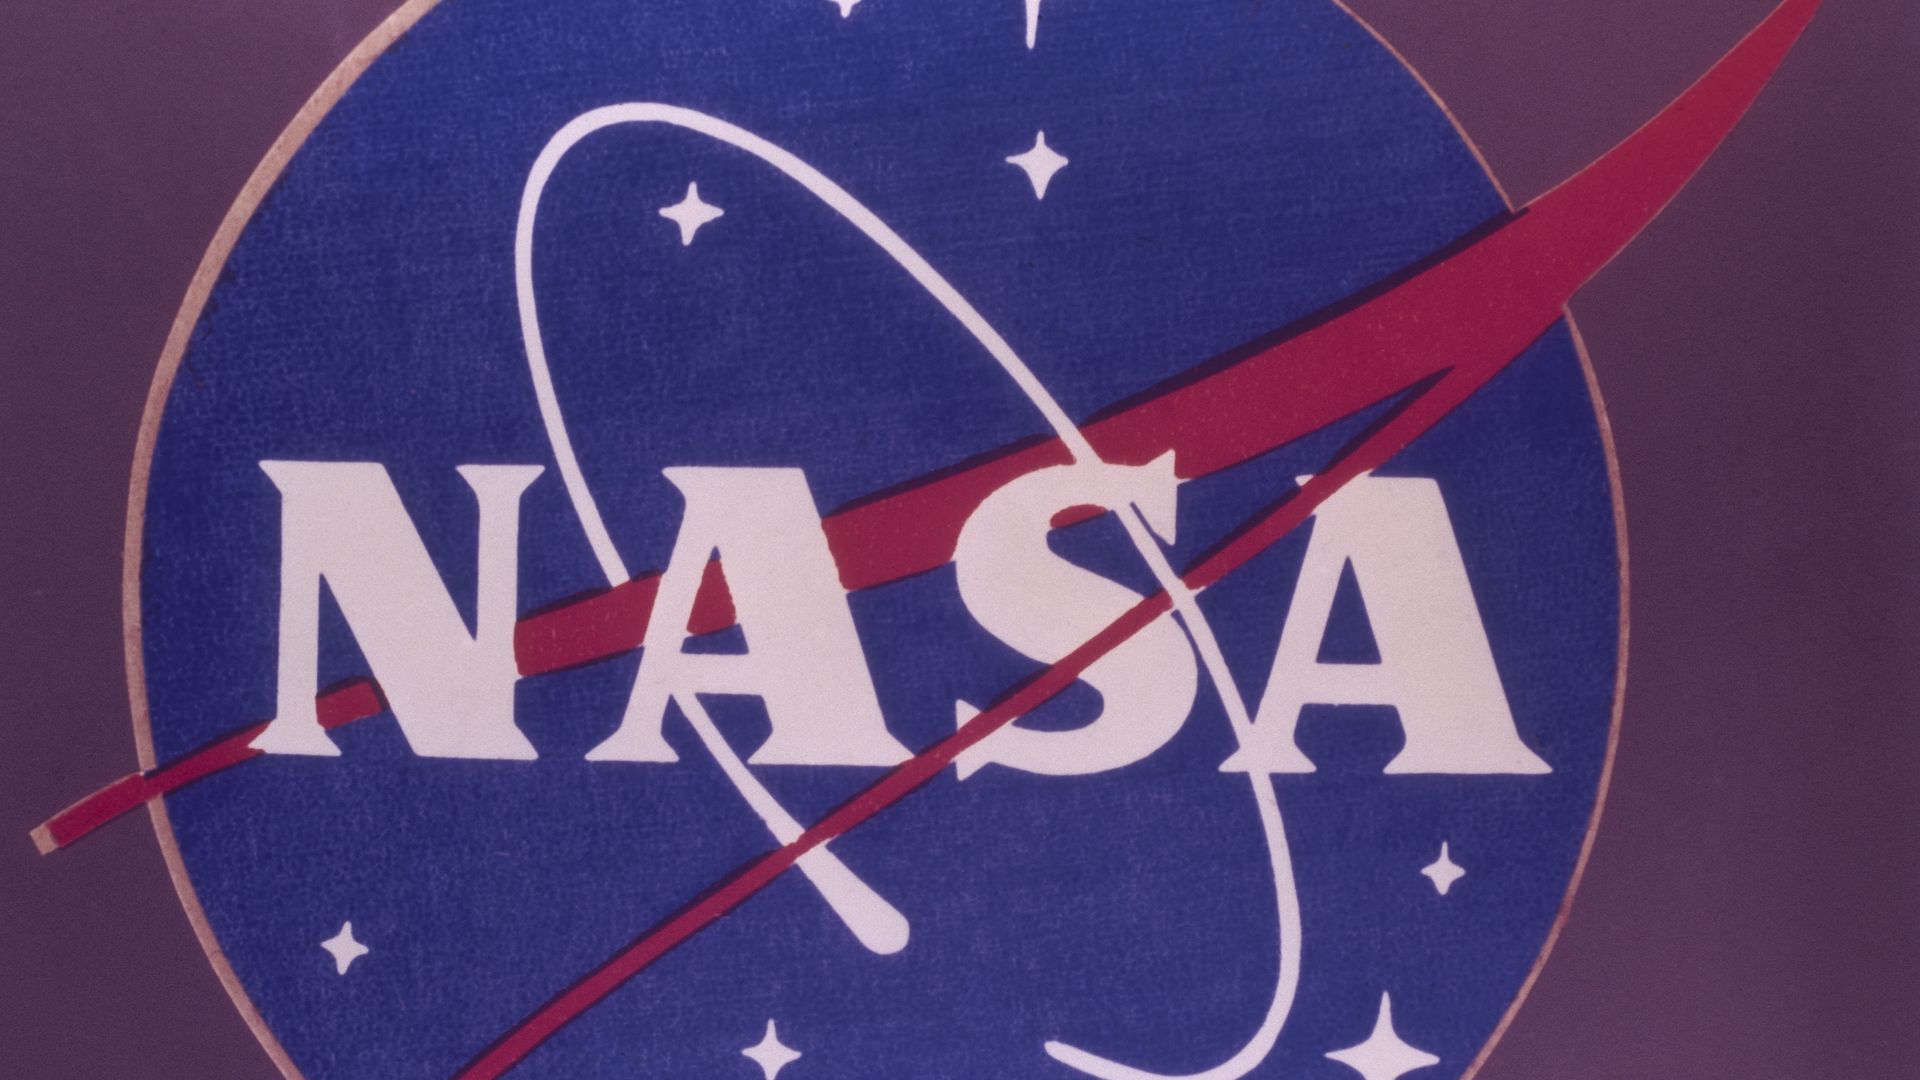 NASA's logo.